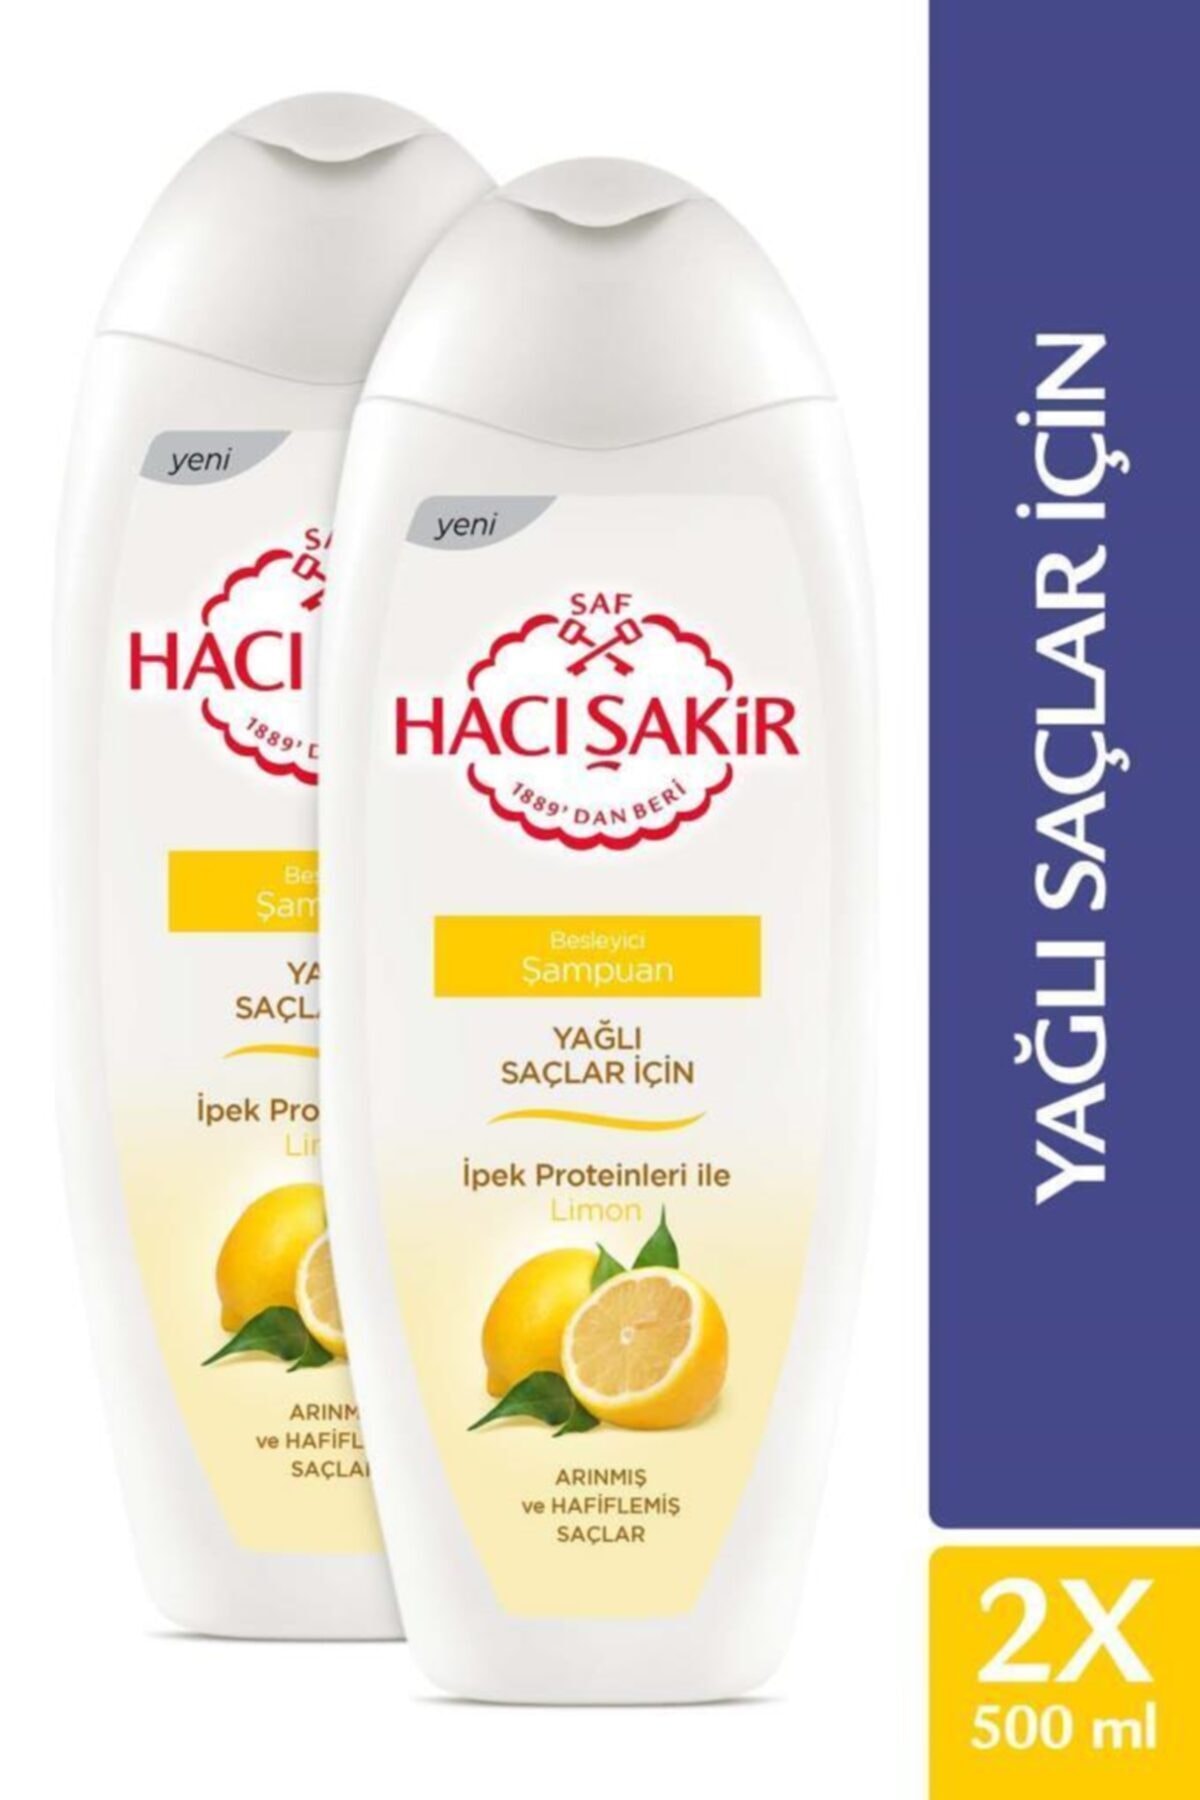 Hacı Şakir Yağlı Saçlar için Limon Besleyici Şampuan 500 ml x2 Adet